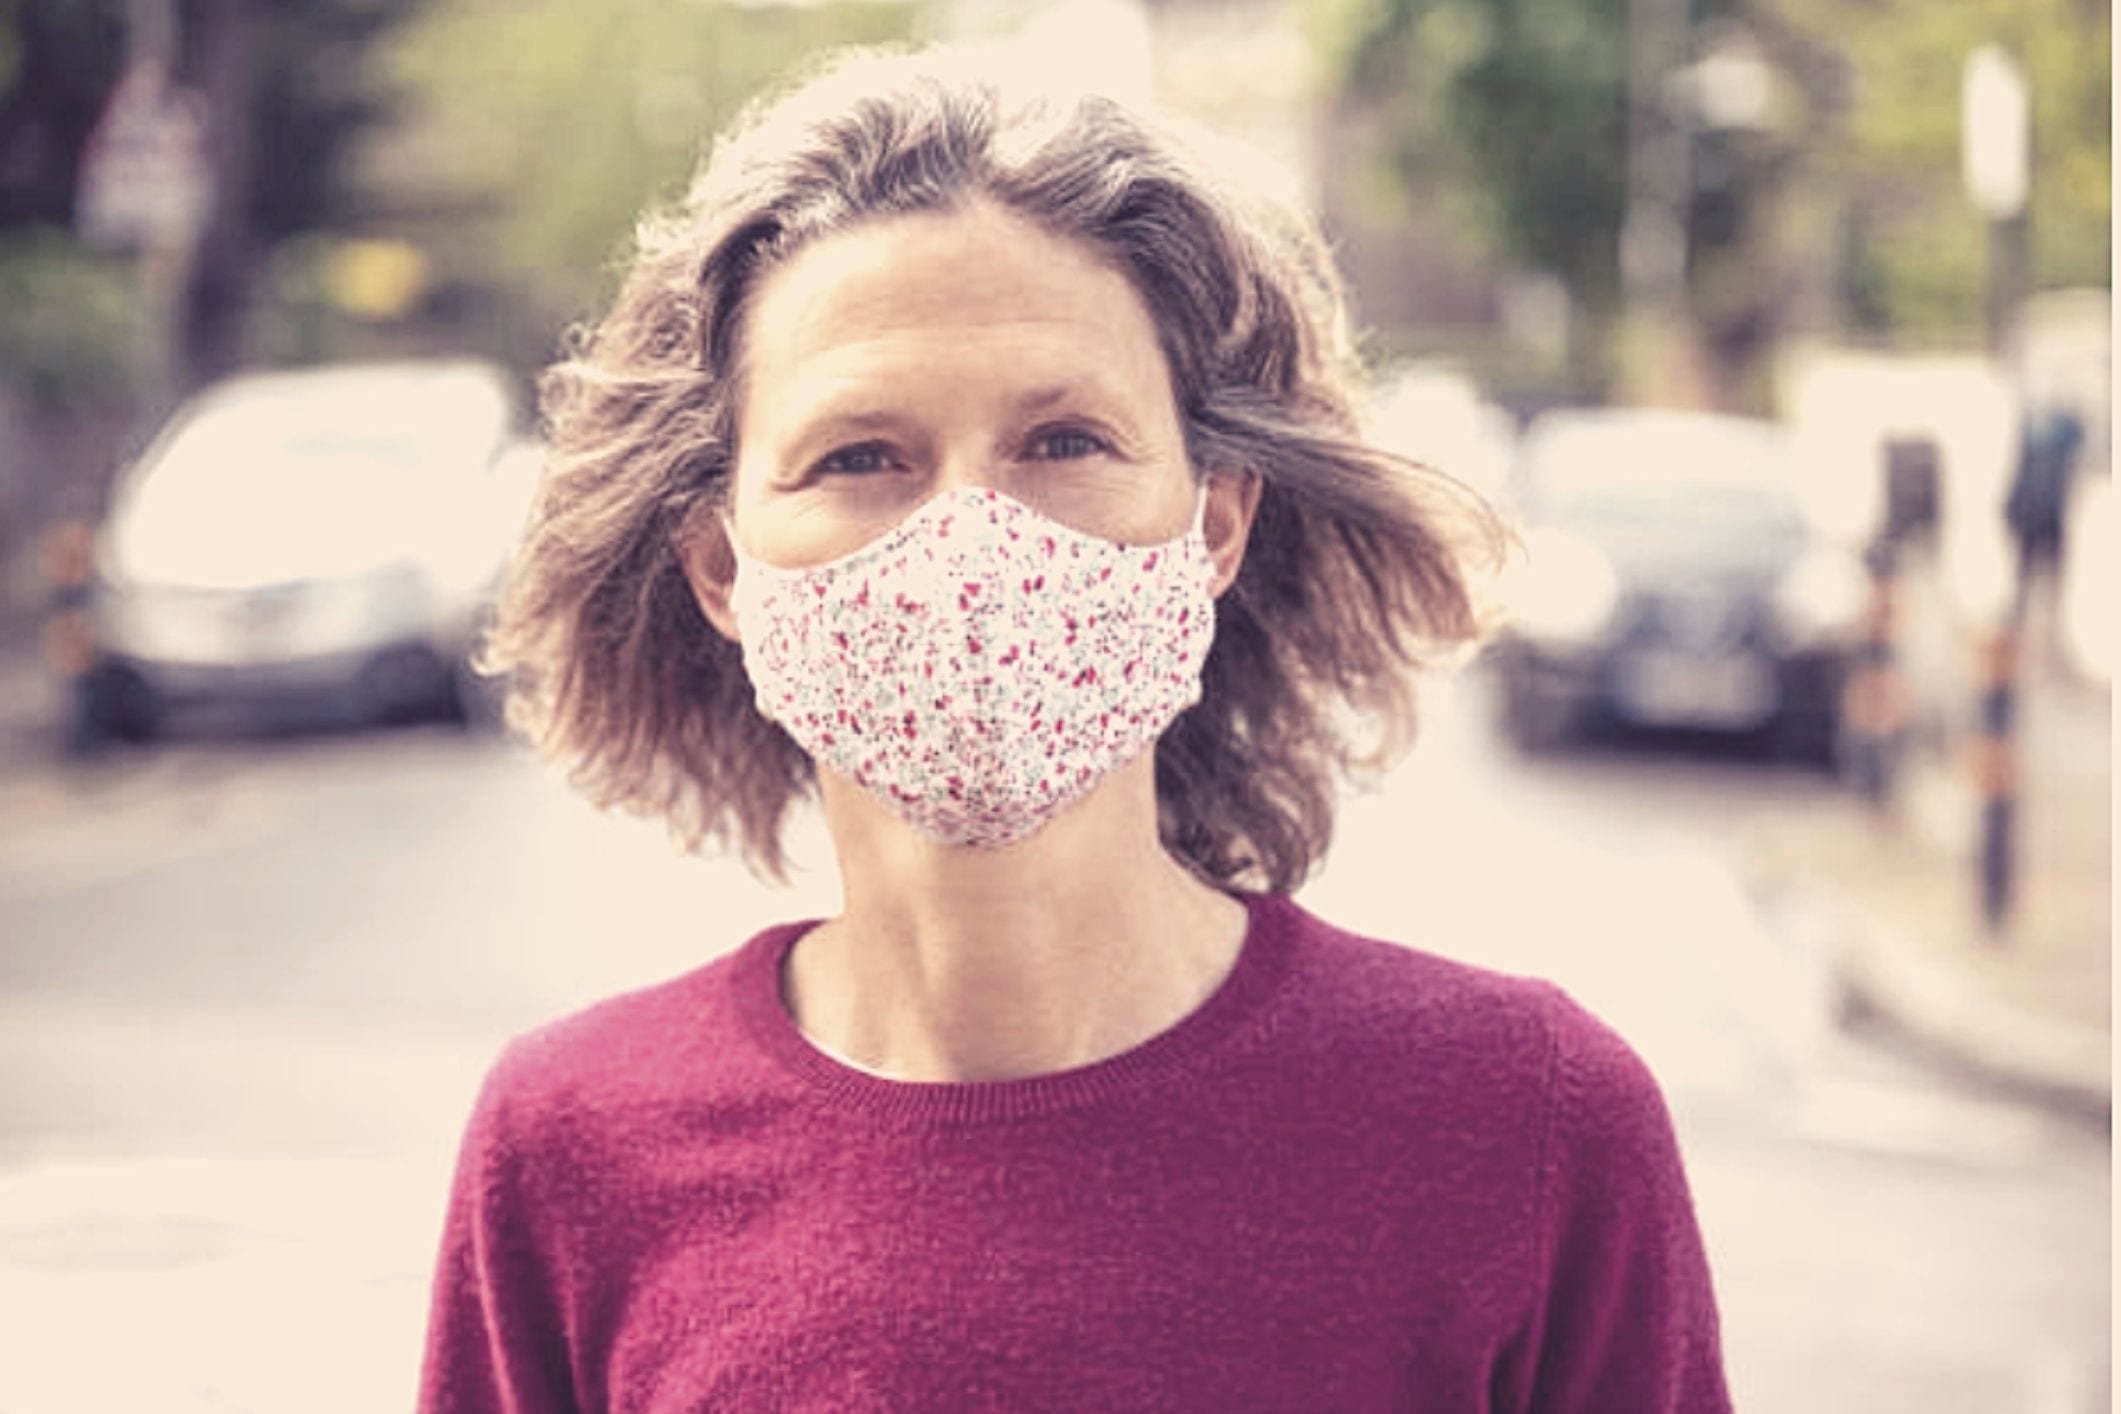 Woman wearing face mask in public